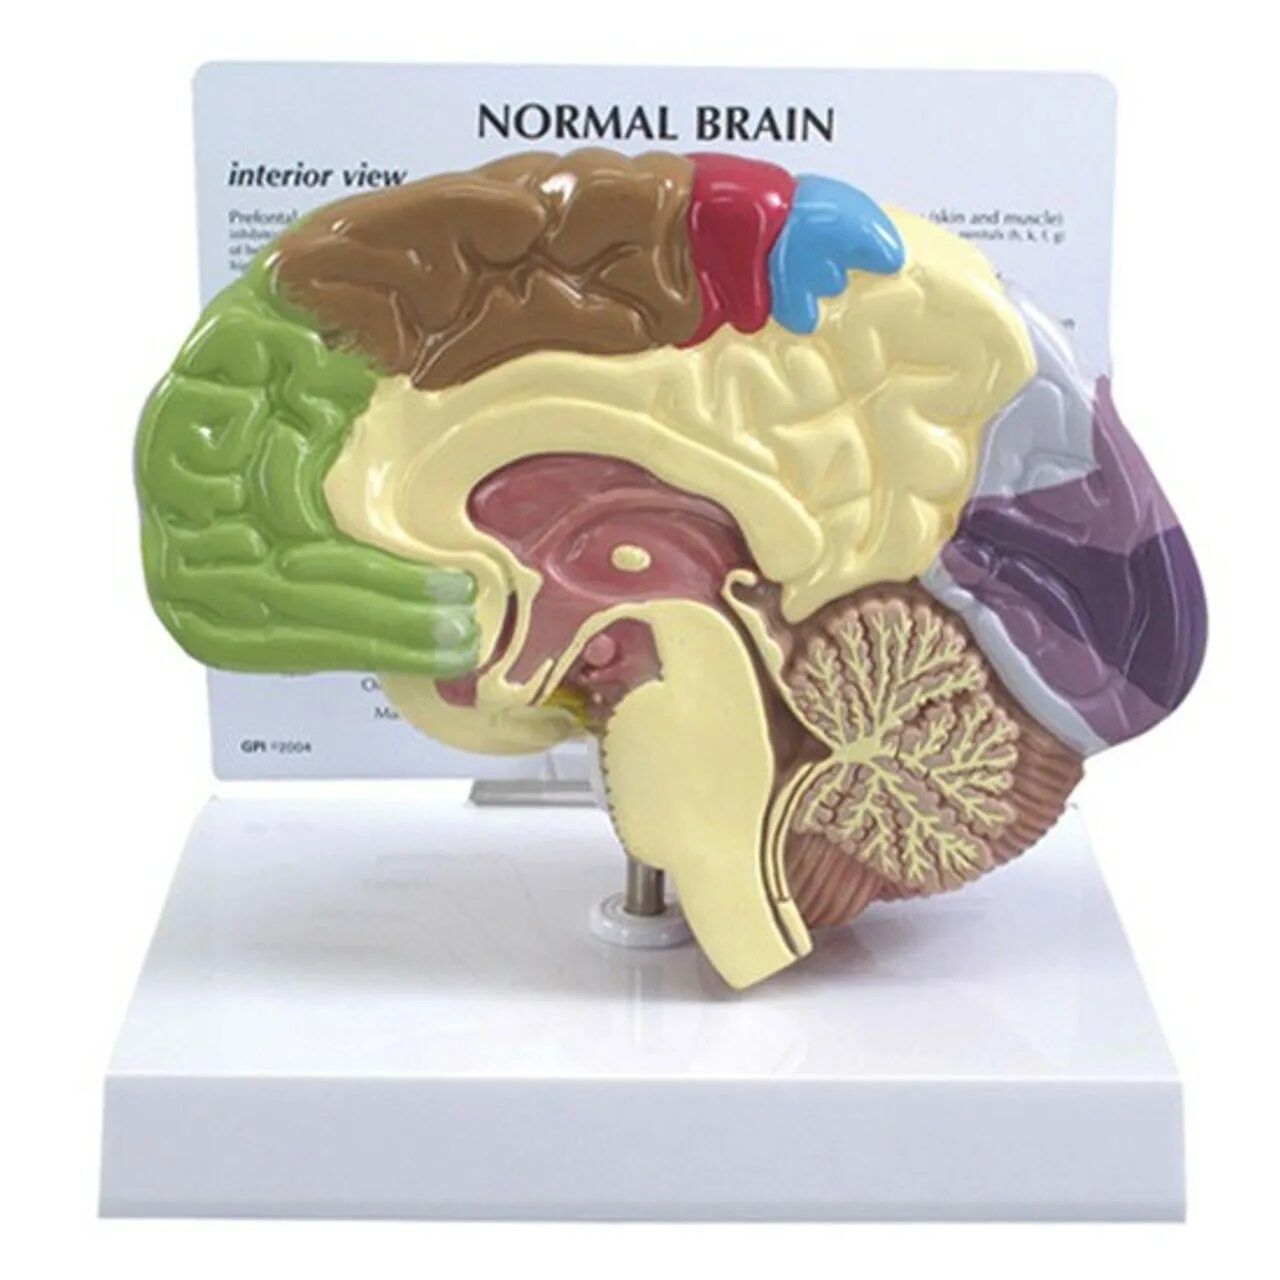 Муляж мозга. Анатомическая модель мозга. Макет головного мозга. Муляж головного мозга человека. Мозг купить спб